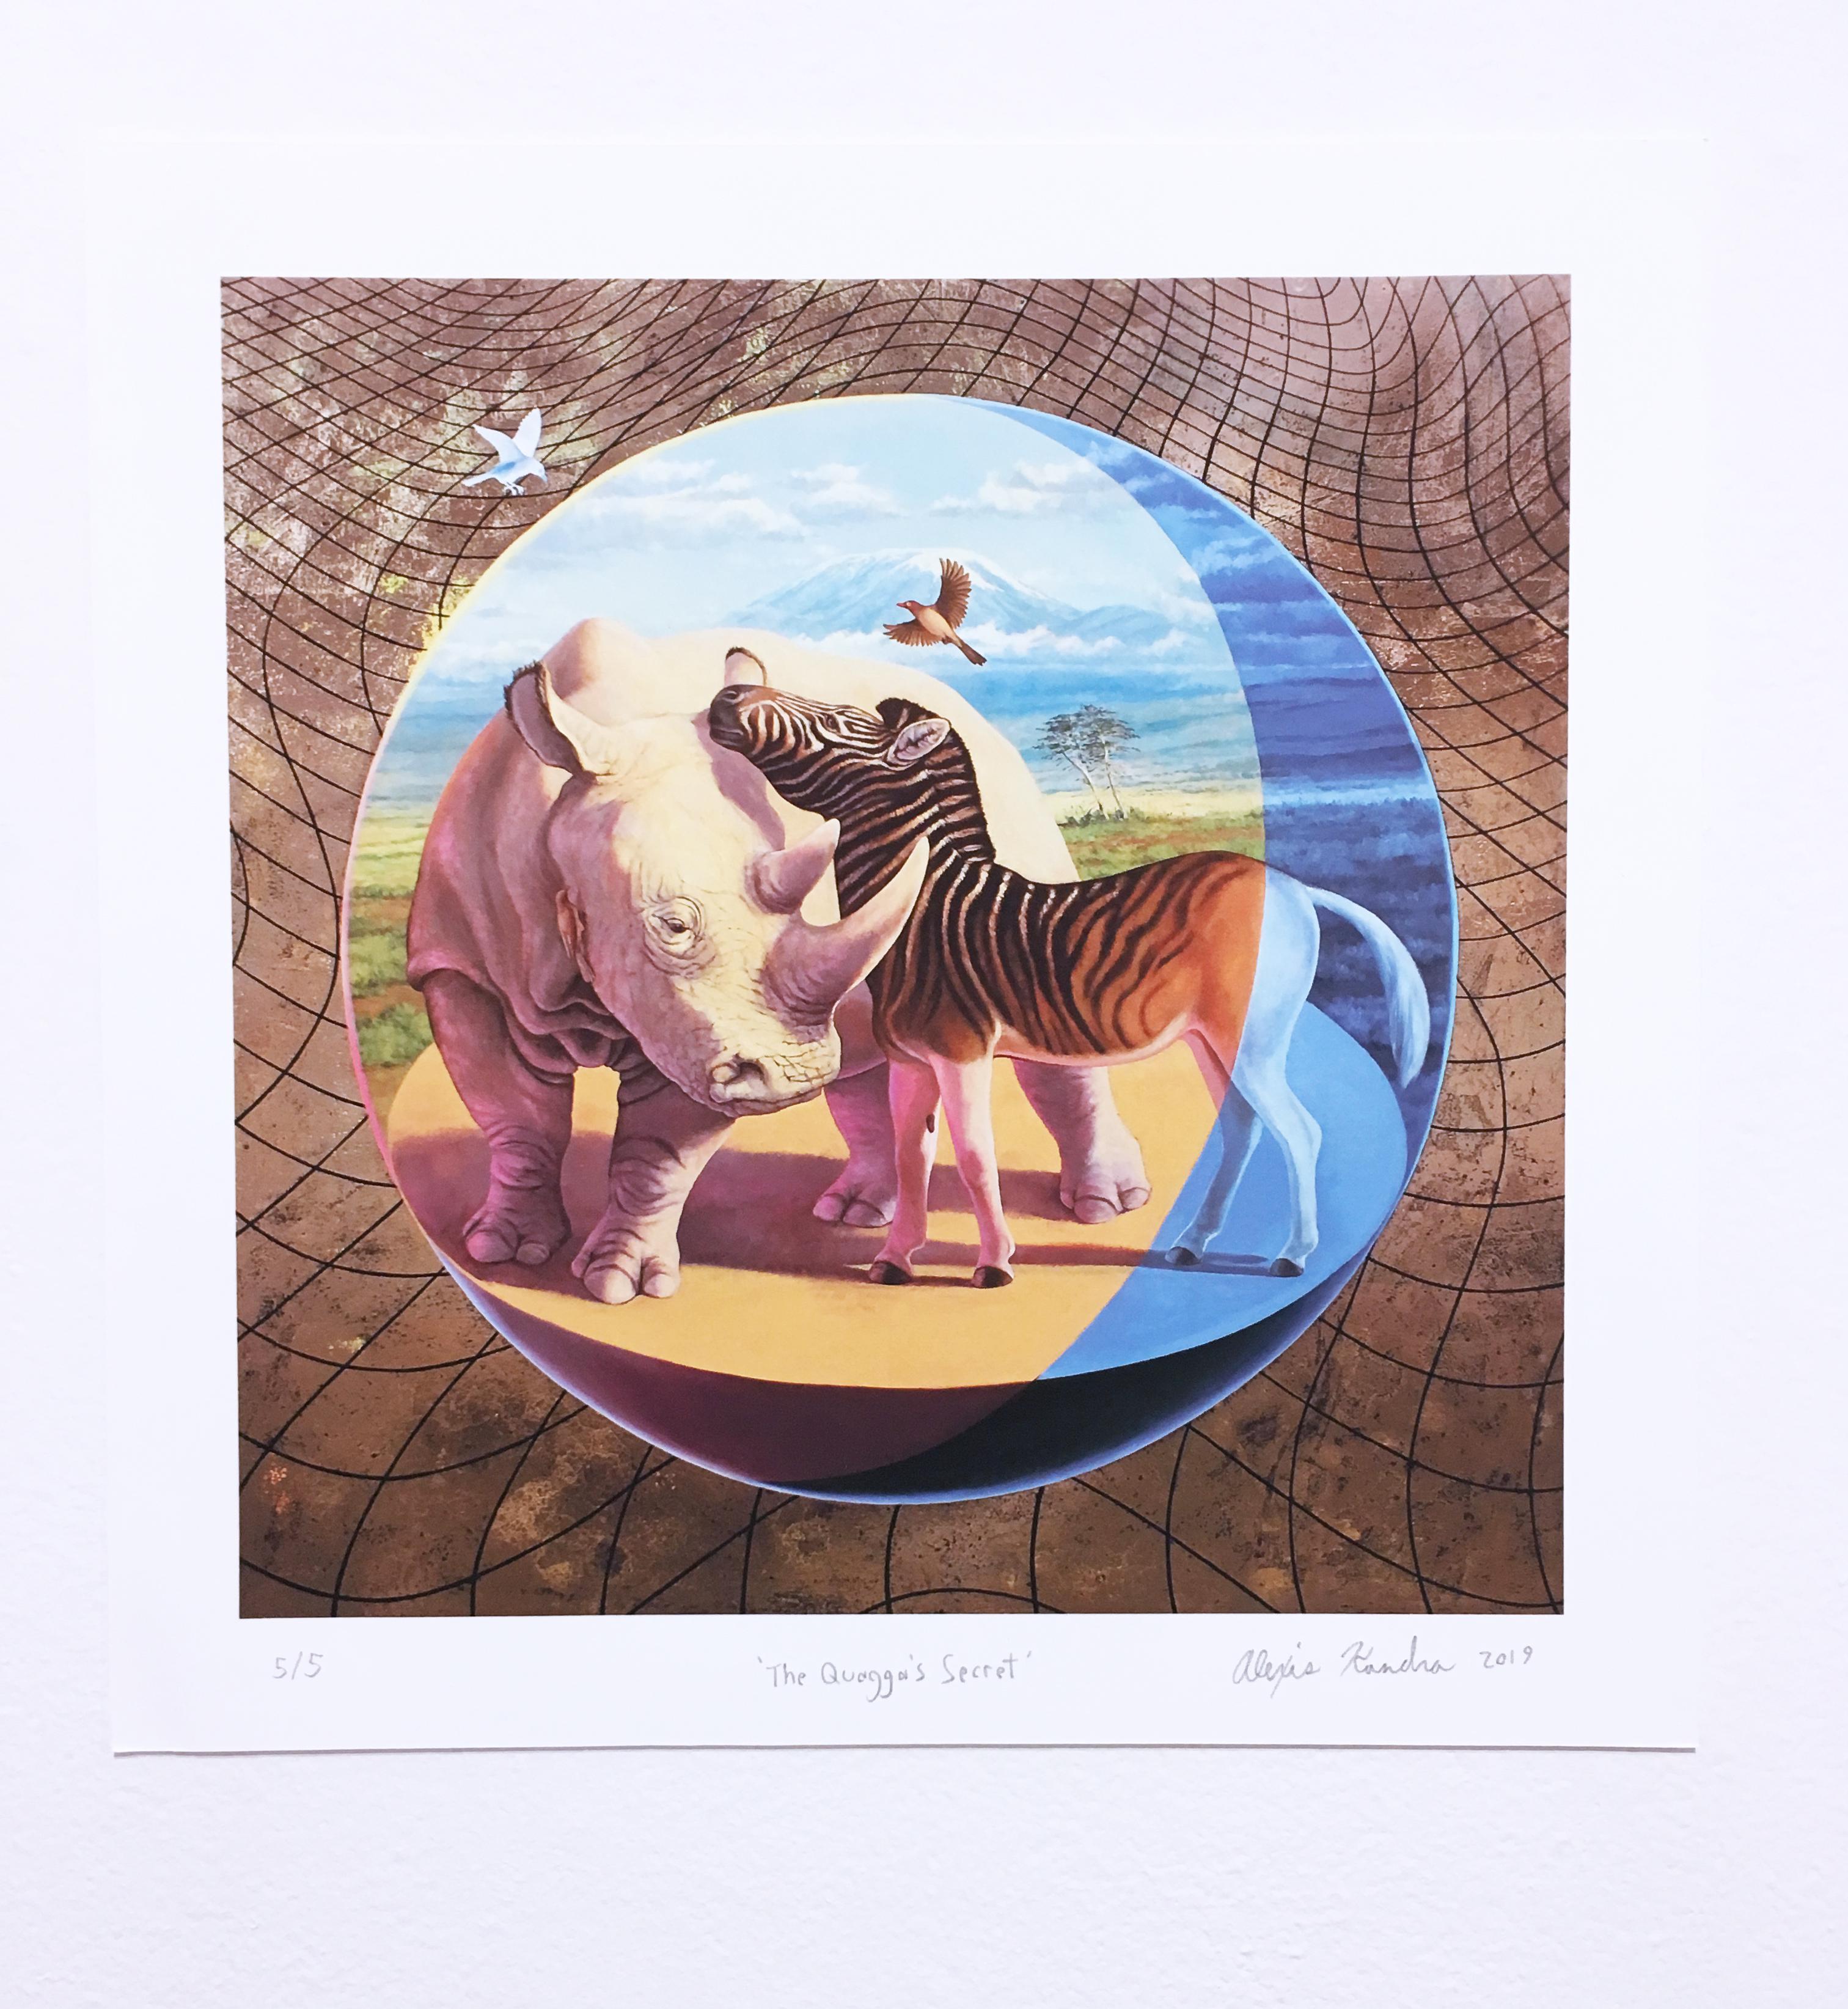 Quagga's Secret, Landschaft, Himmelslandschaft, Zebra, Rhinoceros, Wildtiere, Goldmetallic – Print von Alexis Kandra